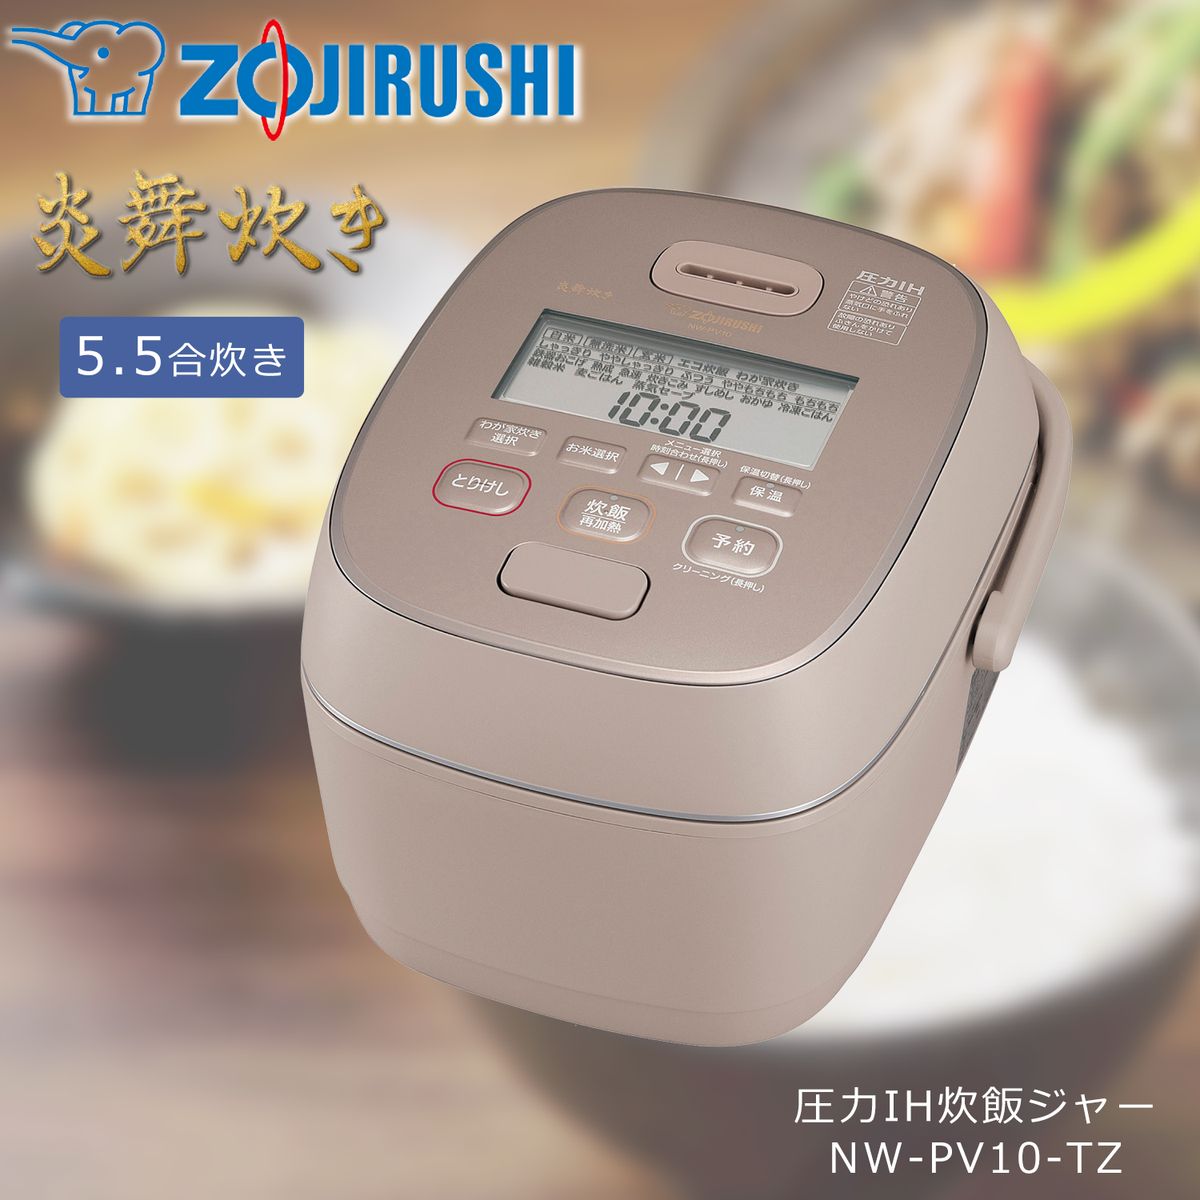 ZOJIRUSHI◇炊飯器 極め炊き NW-PV10-BZ【家電・ビジュアル・オーディオ】 炊飯器